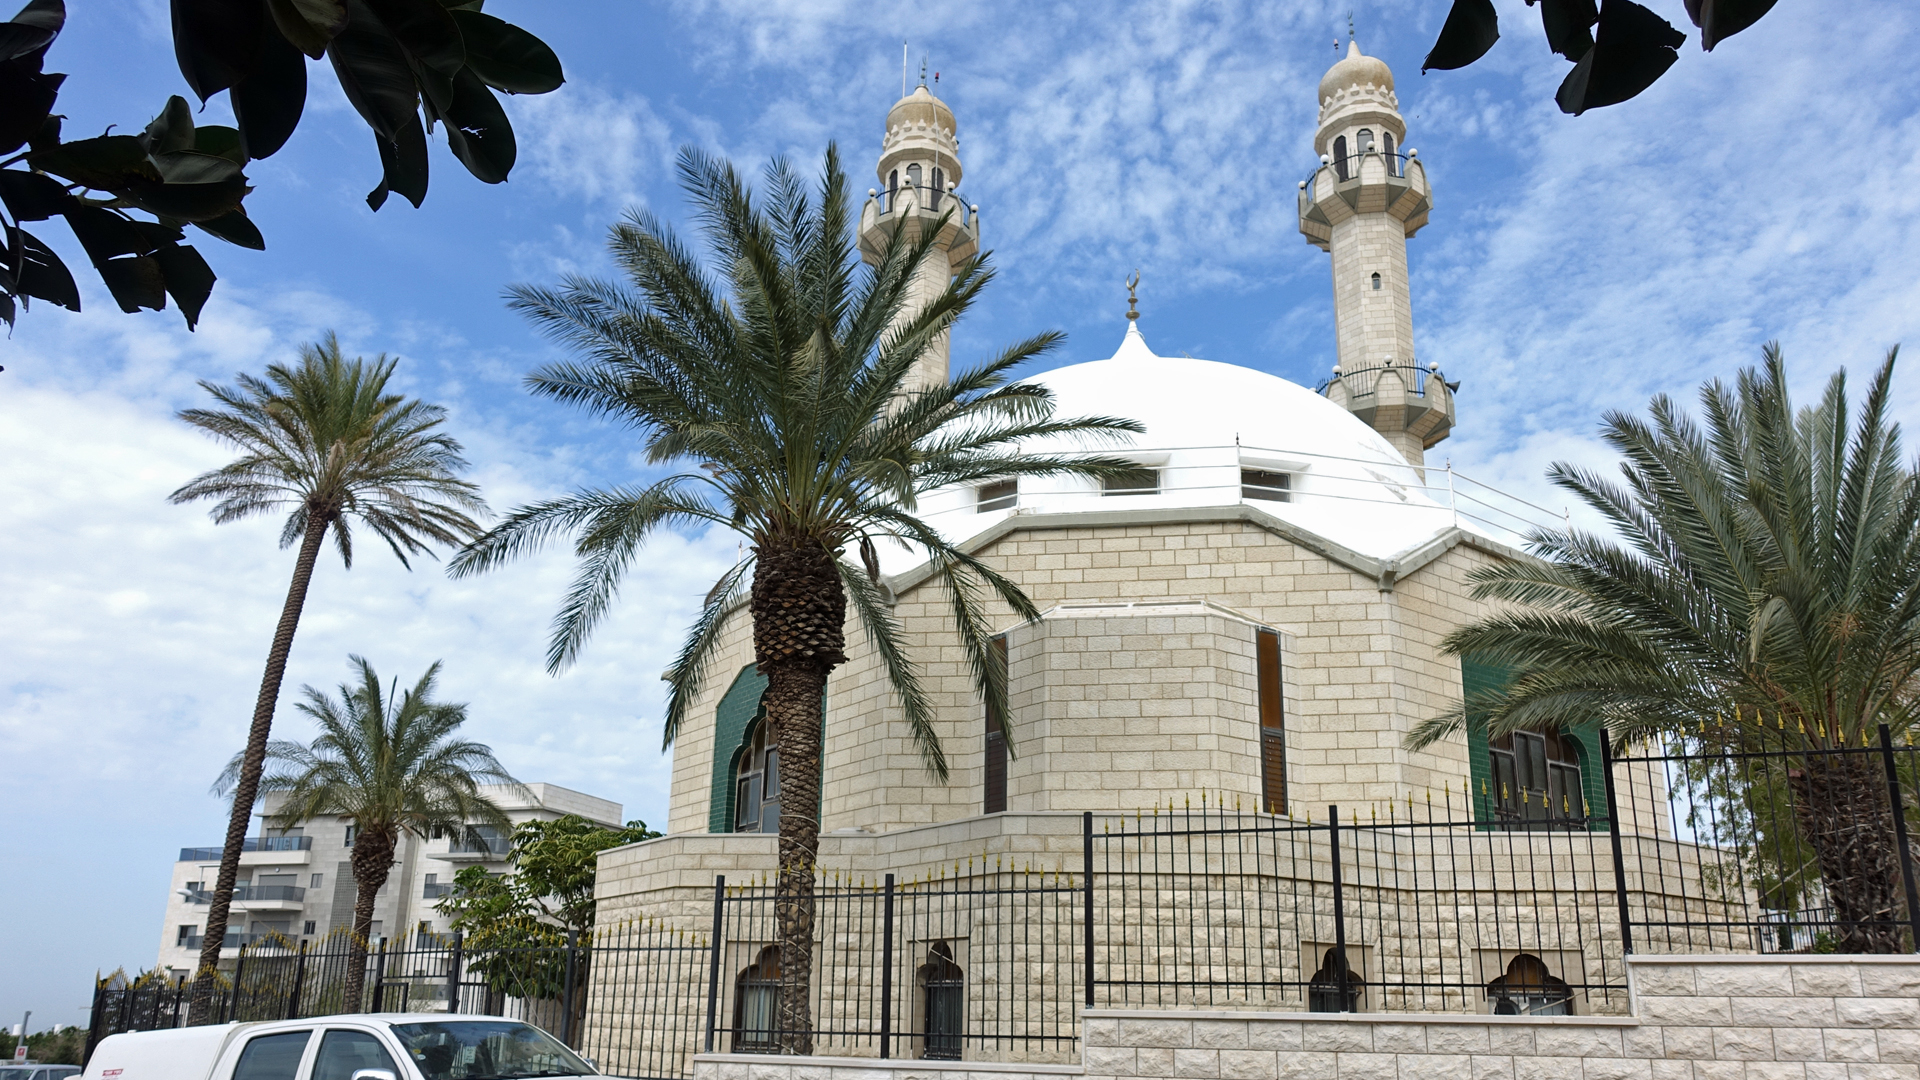 Die Mahmud-Moschee beherrscht mit ihren 34 Meter hohen Minaretten das Bild von Kababir